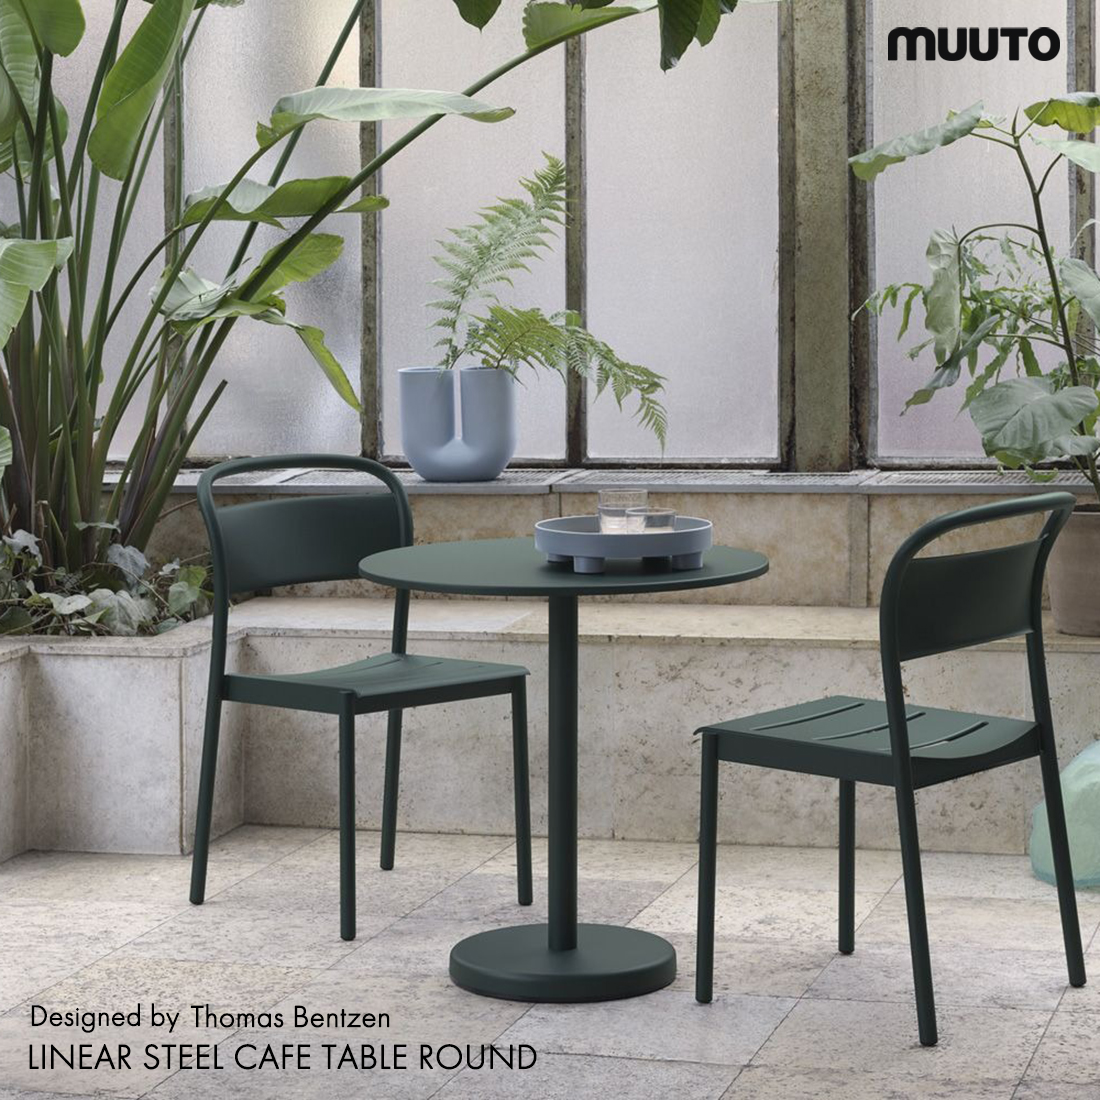 MUUTO ムート Muuto LINEAR STEEL CAFE TABLE ROUND リニアスチールカフェテーブル ラウンド デンマーク 北欧  Thomas Bentzen トーマス・ベンゼン